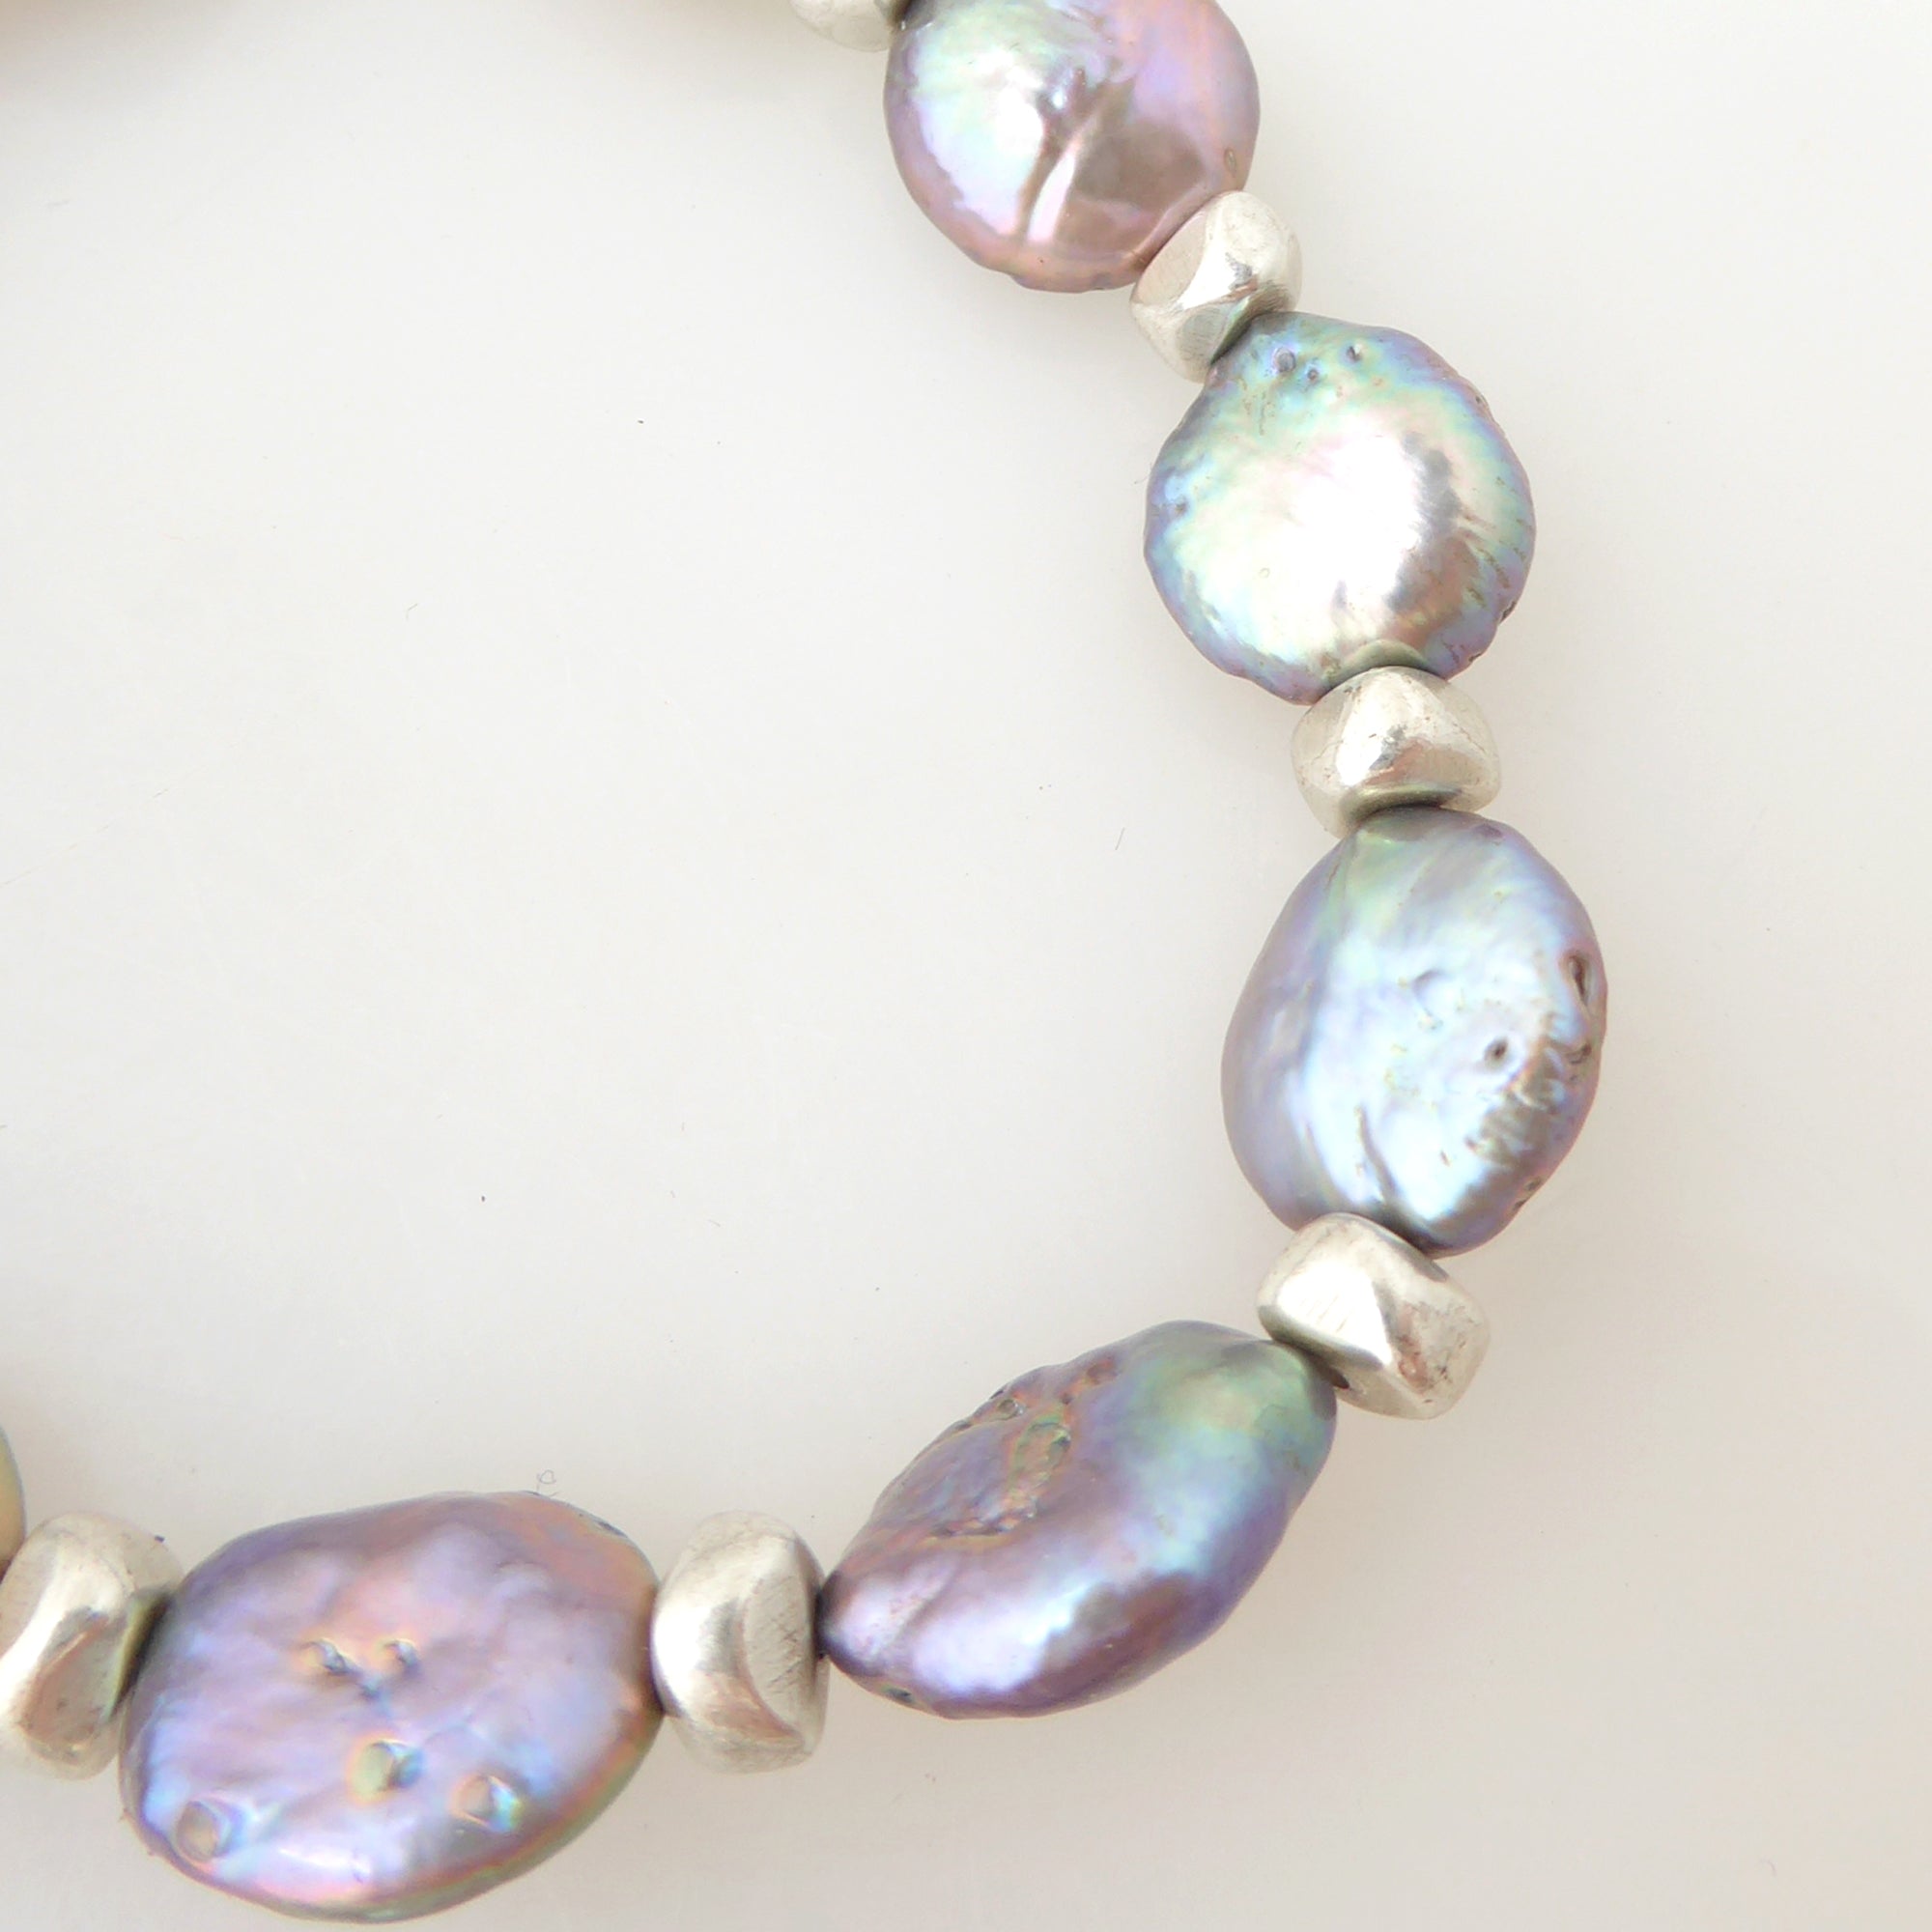 Peacock pearl bracelet set by Jenny Dayco 6